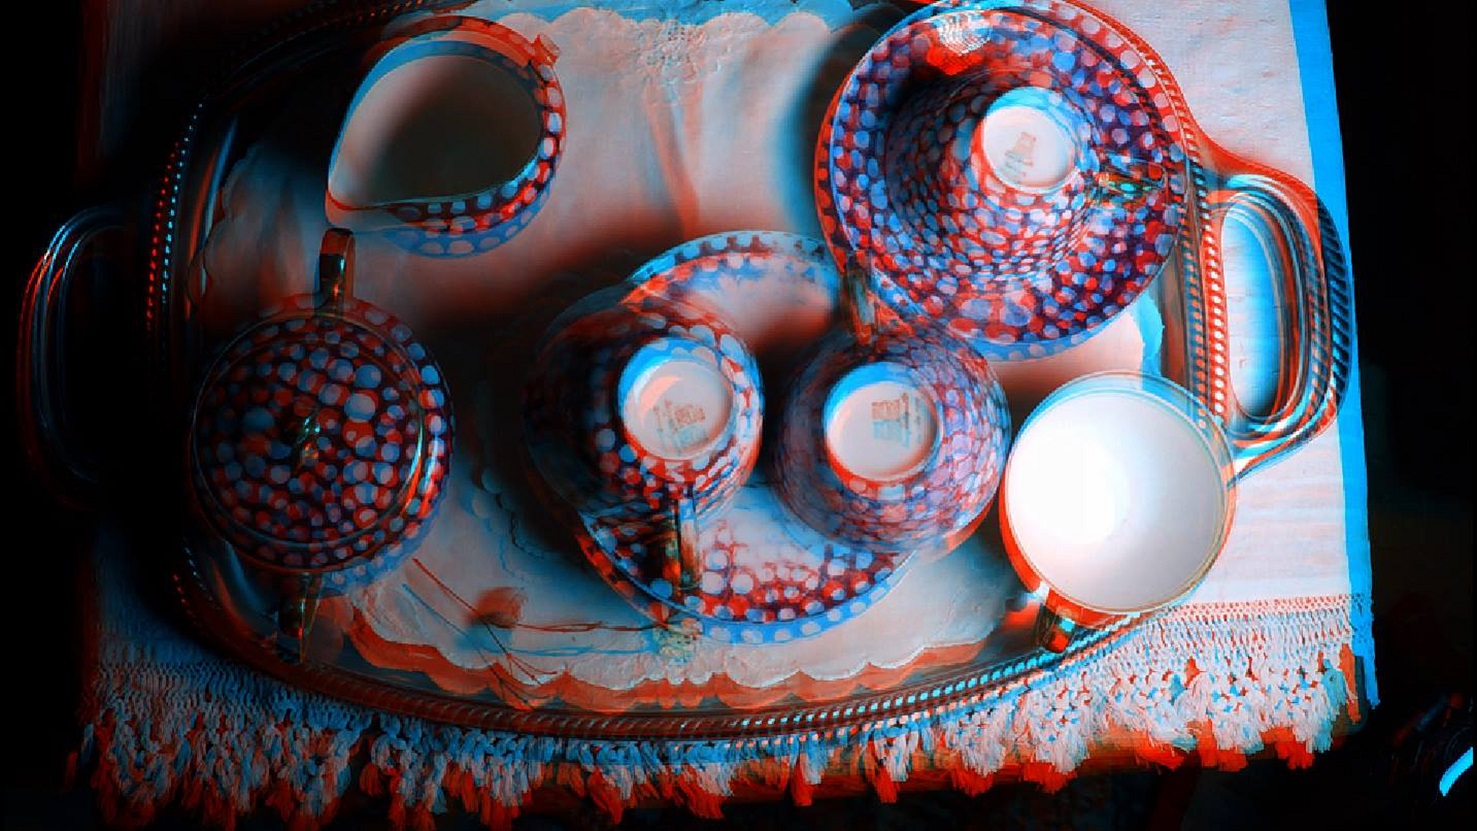 Λουκία Αλβάνου, Sleeping HERO4, 2016 (στιγμιότυπο ταινίας) Μονοκάναλη τρισδιάστατη στερεοσκοπική ταινία 2:40 λεπτά Ανάθεση της Στέγης Γραμμάτων & Τεχνών Ιδρύματος Ωνάση, Αθήνα